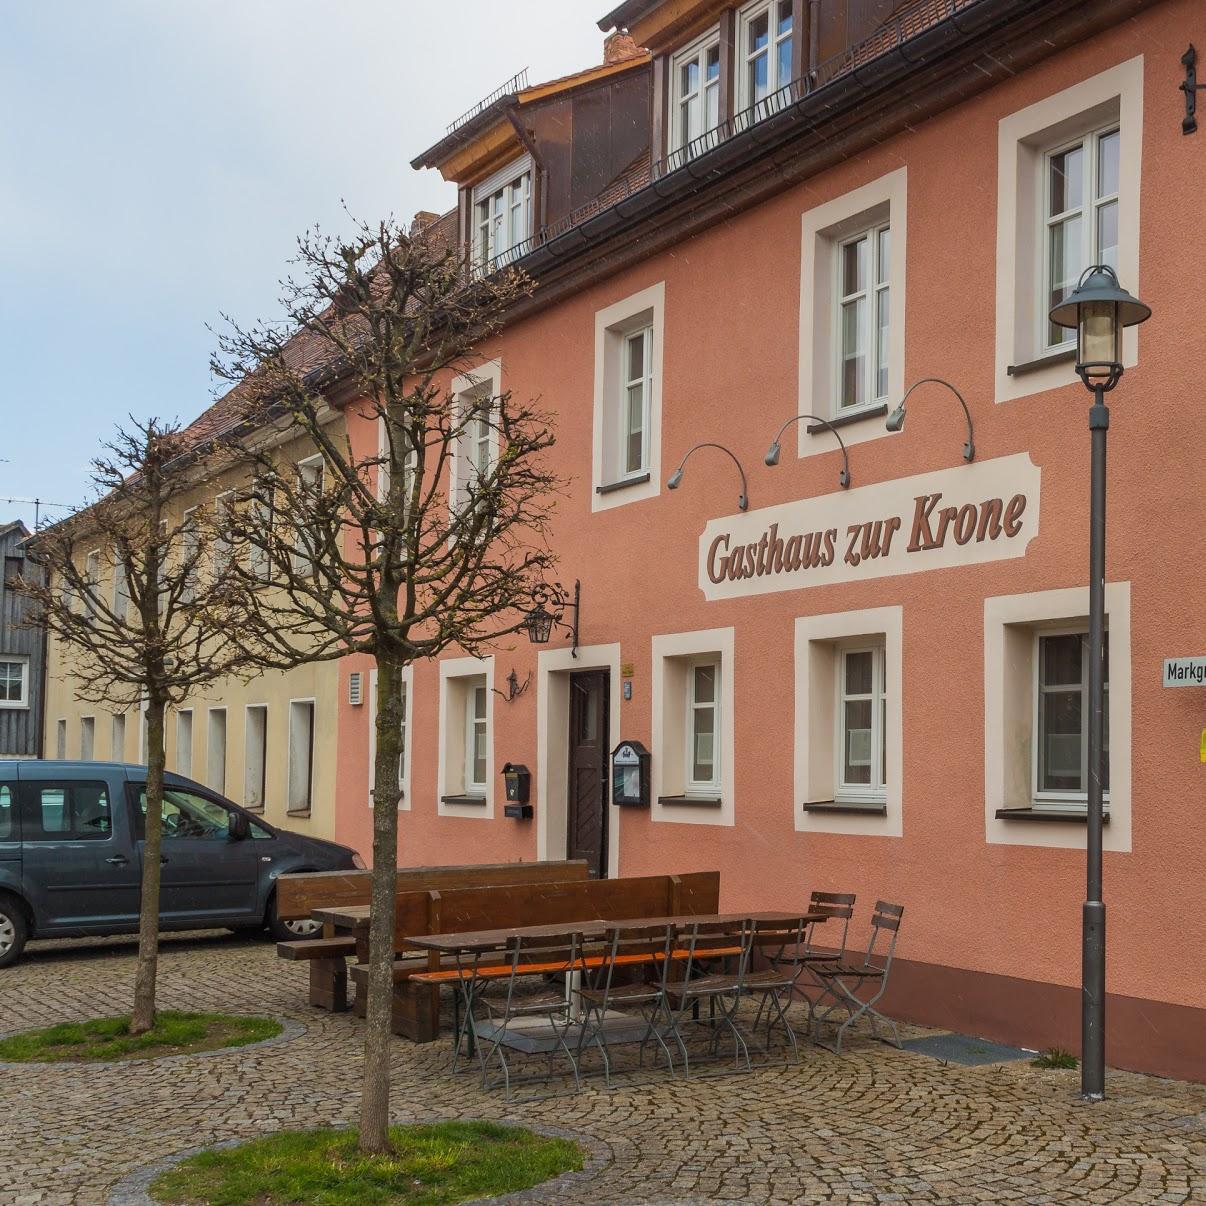 Restaurant "Gasthaus zur Krone" in Petersaurach